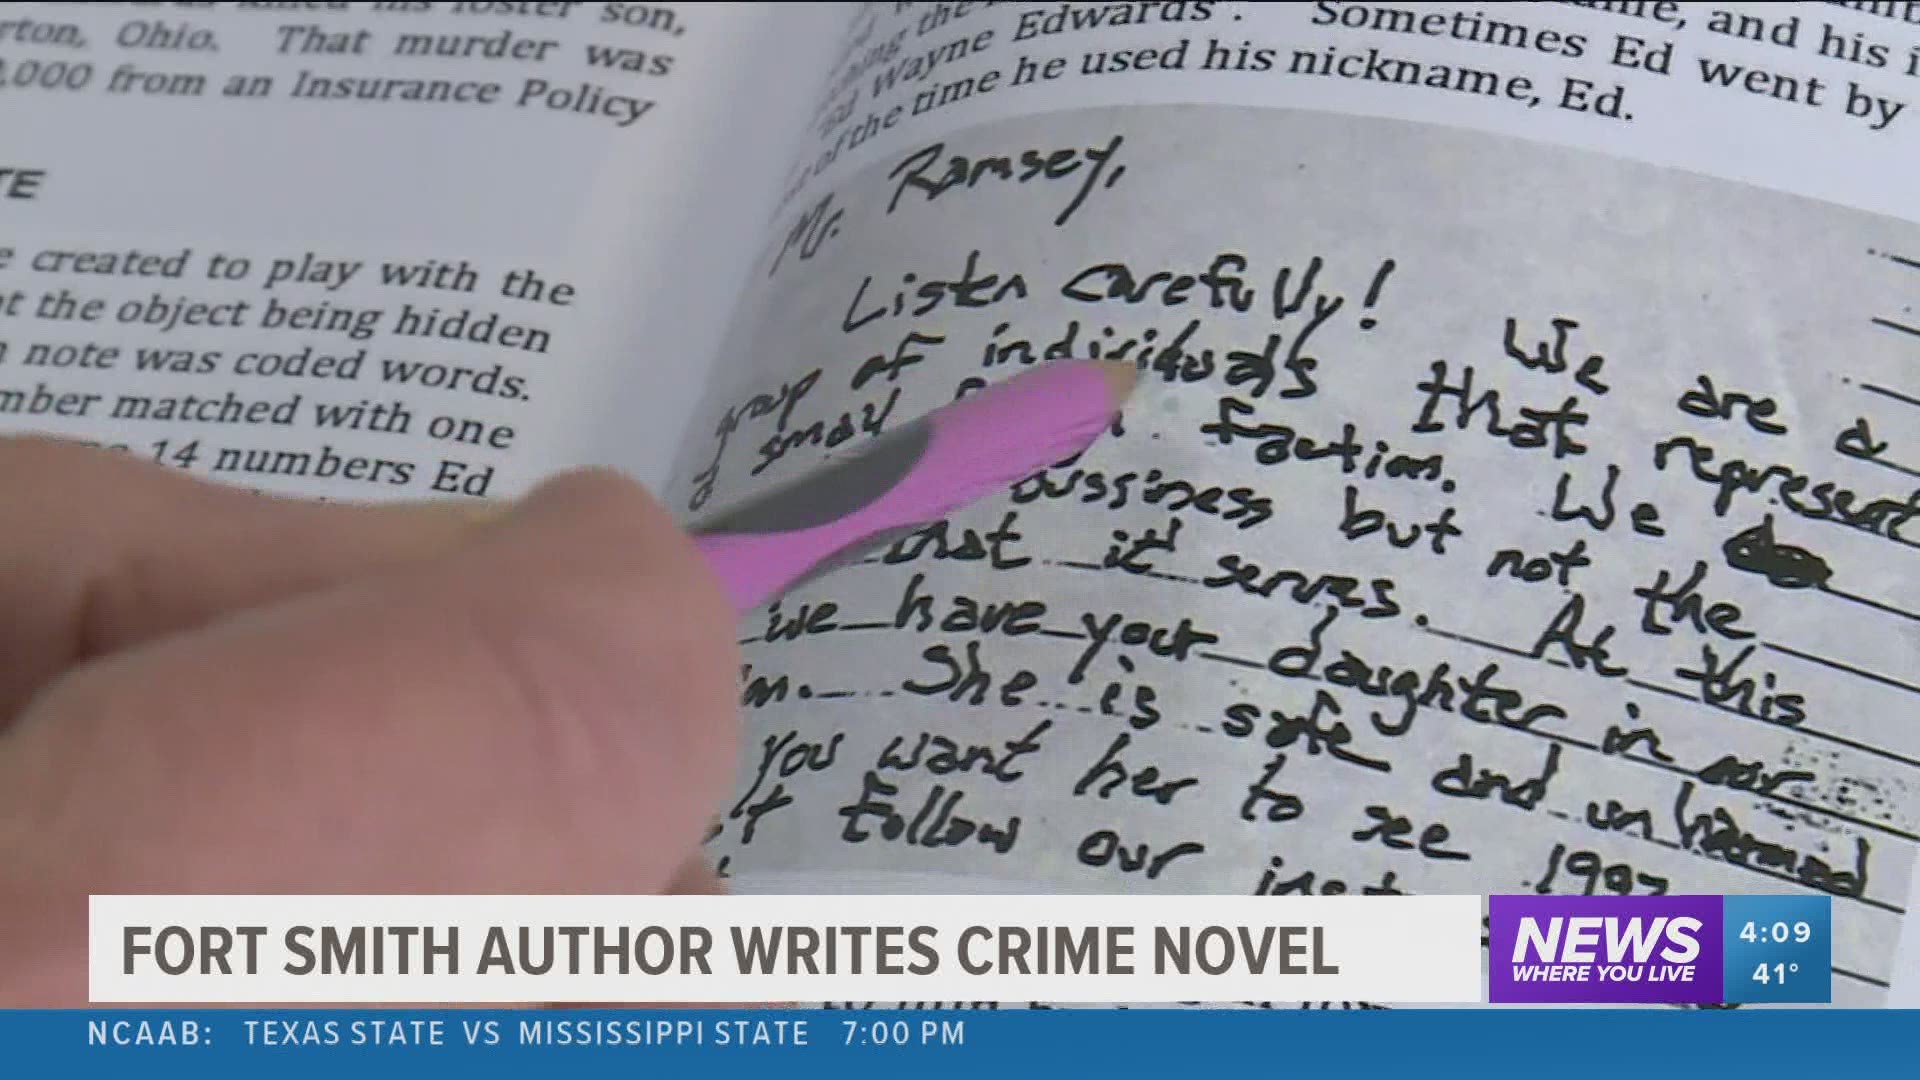 Fort Smith Author Writes Crime Novel